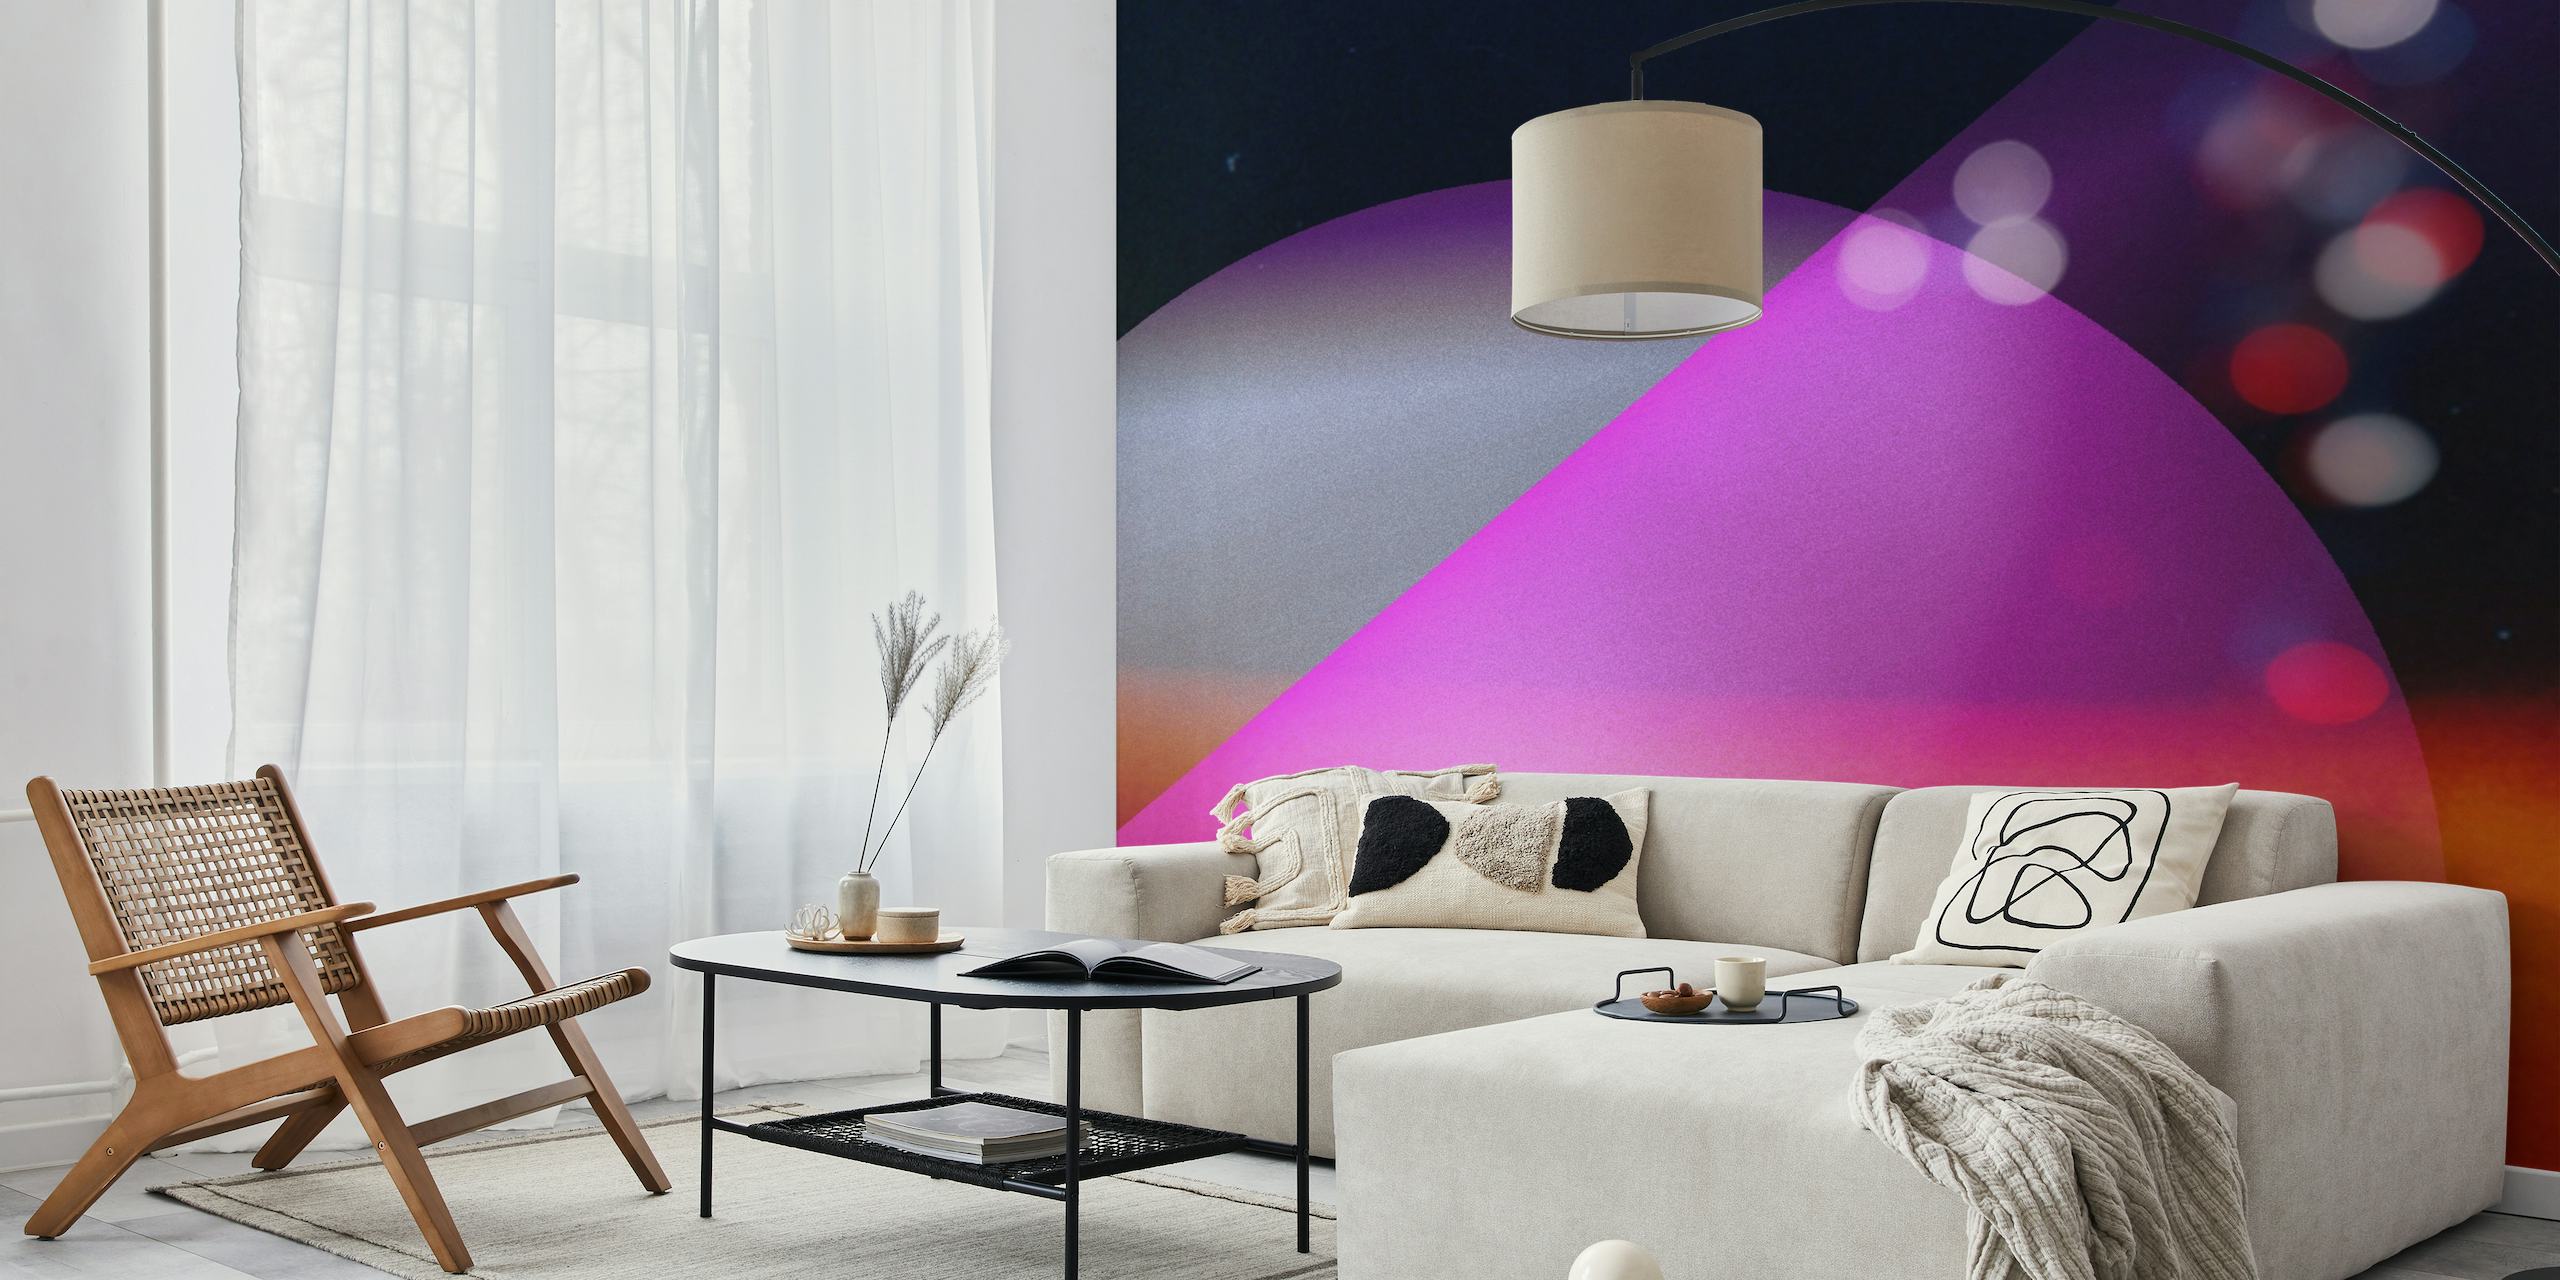 Abstraktní vesmírná nástěnná malba se zářivými fialovými, modrými a růžovými barvami připomínající vzdálený vesmír